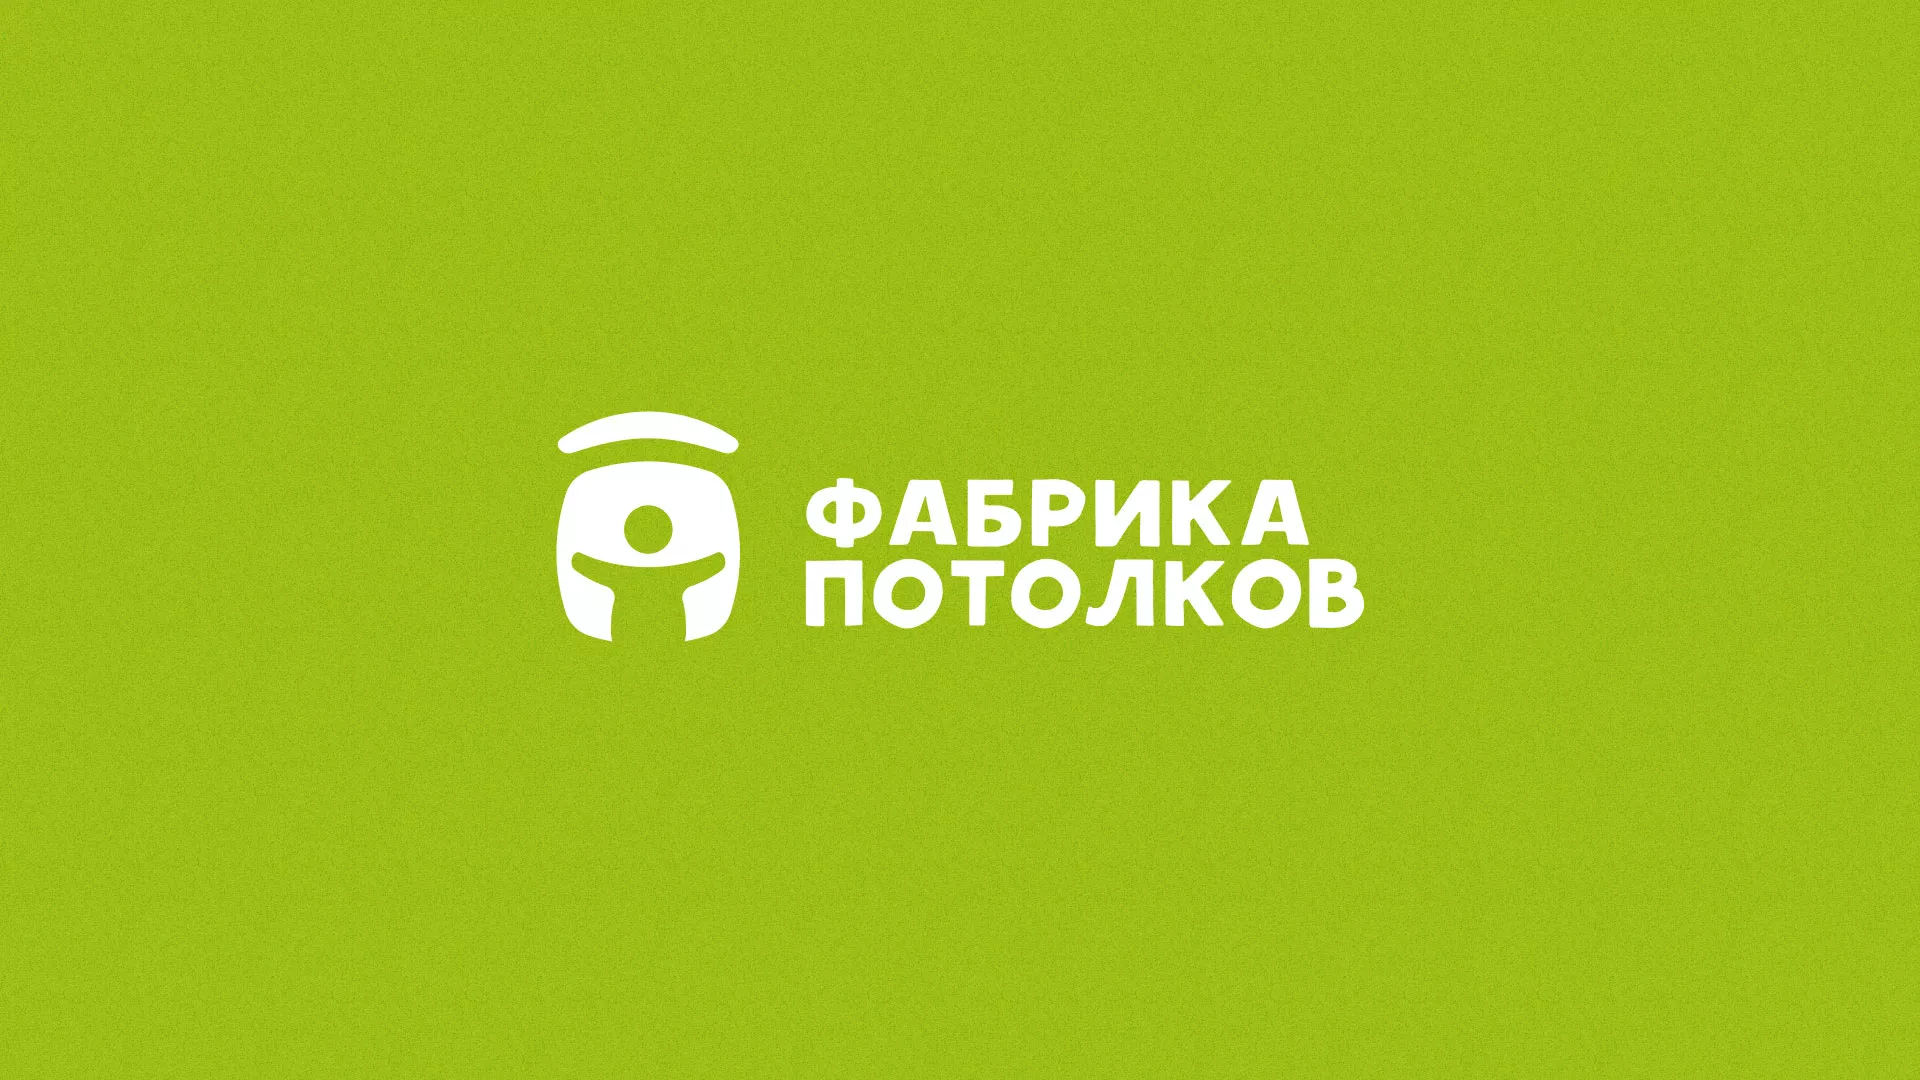 Разработка логотипа для производства натяжных потолков в Гурьевске